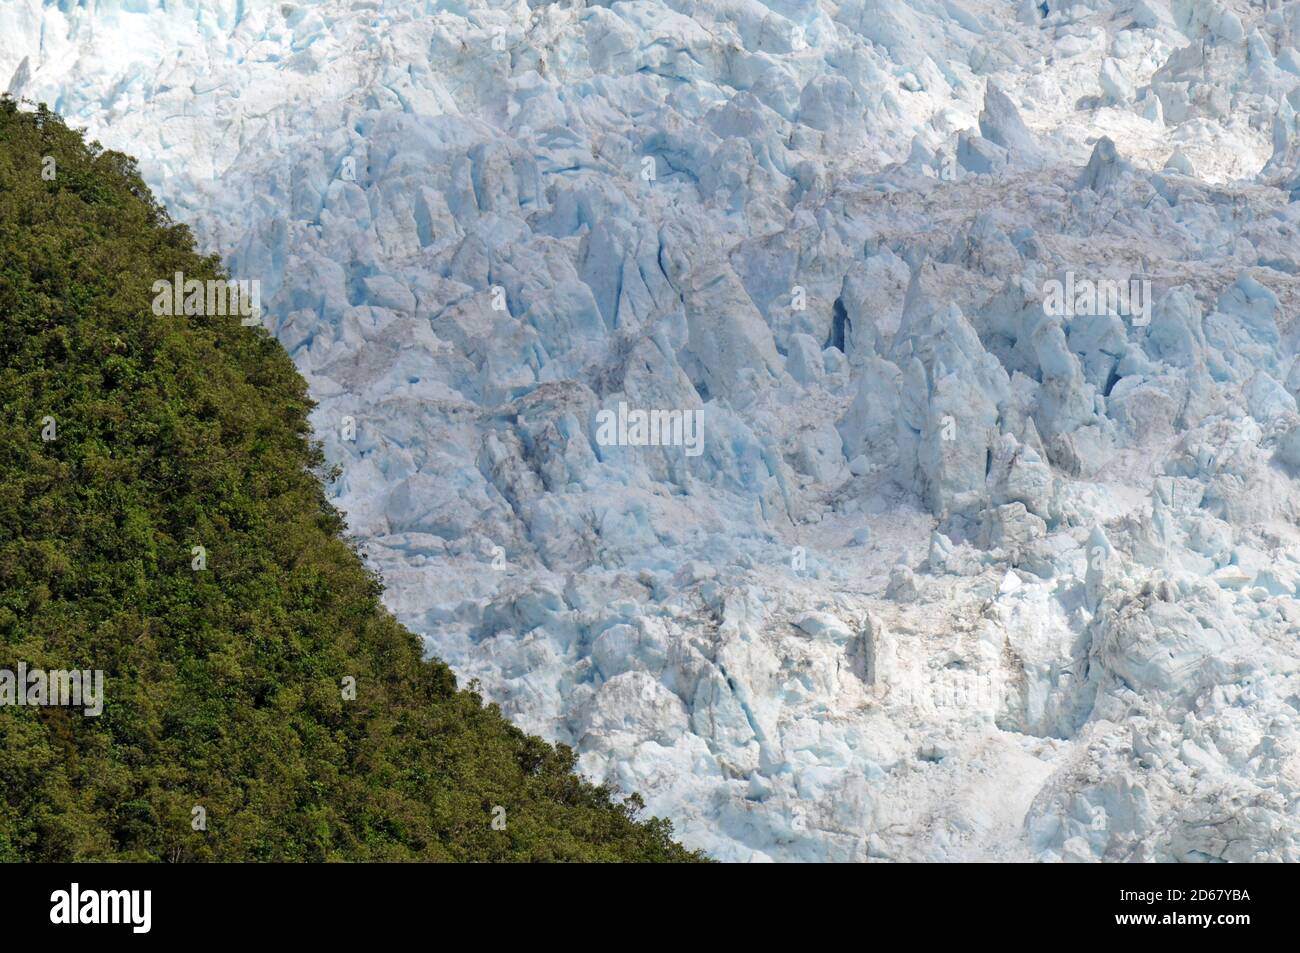 El glaciar Franz Josef, el deshielo de los glaciares debido al cambio climático, Franz Josef, Isla del Sur, Nueva Zelanda Foto de stock